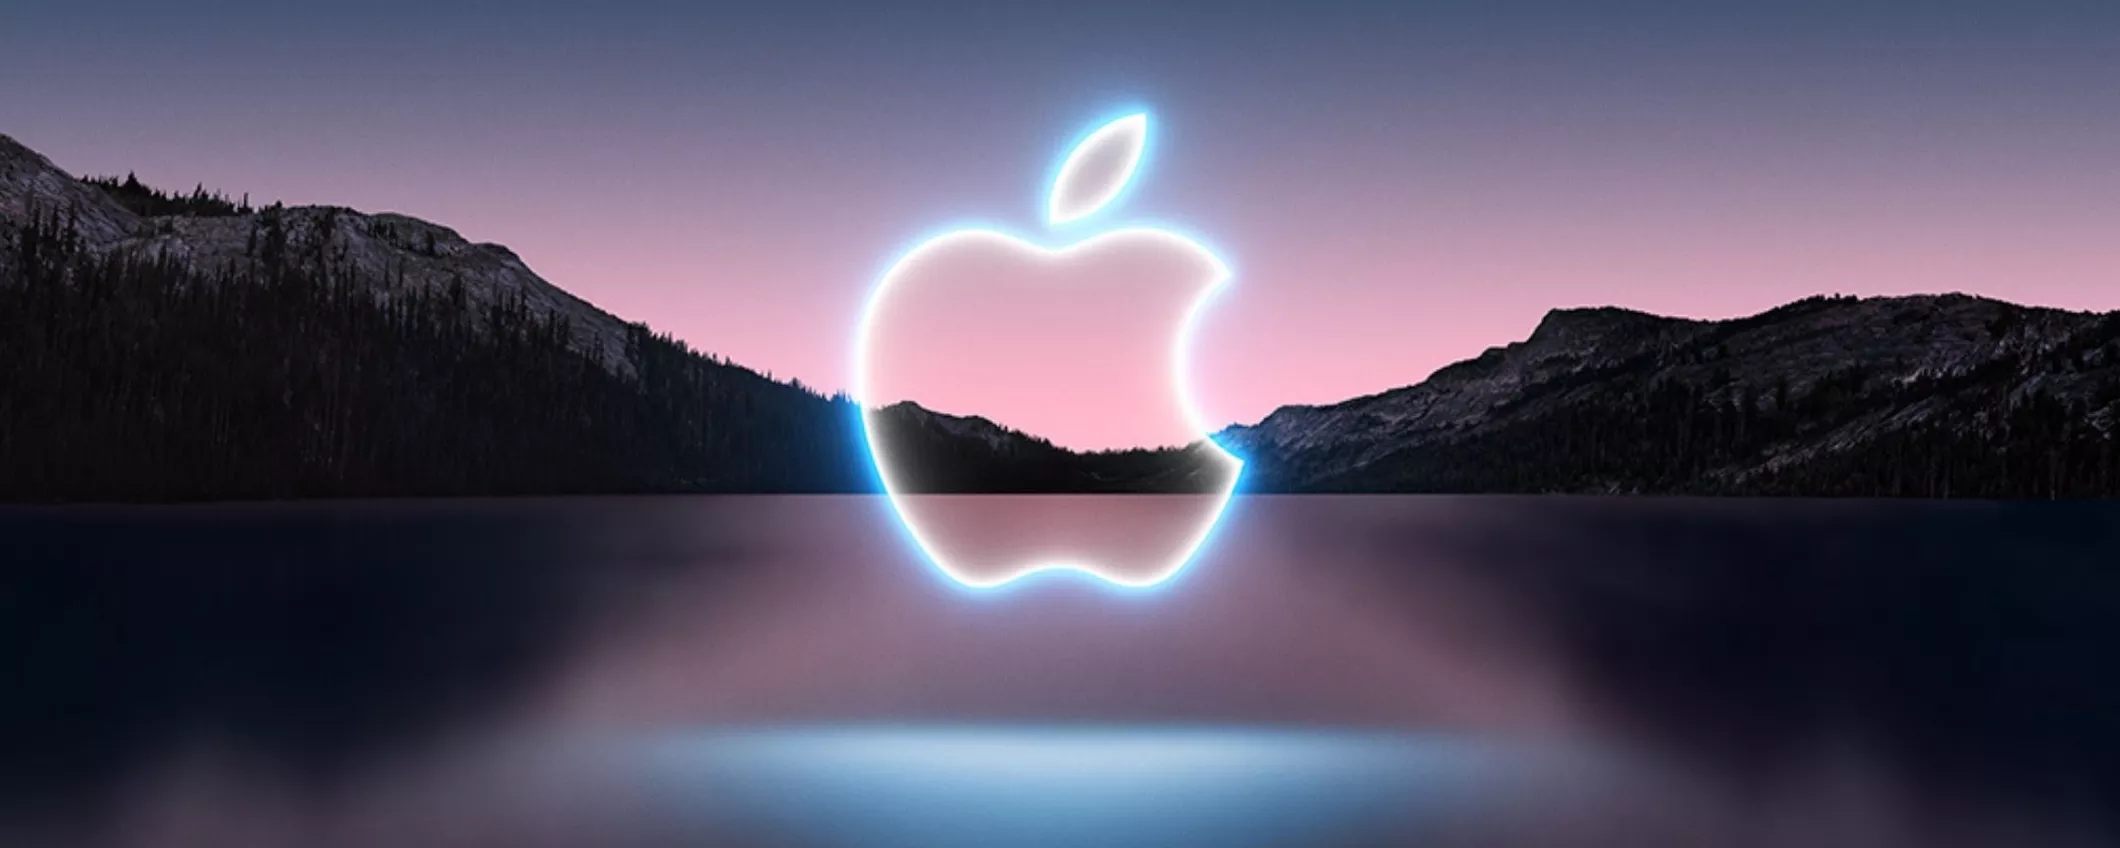 Il rilascio di iOS 15.3, macOS 12.2 e gli altri: tutto quello che c’è da sapere